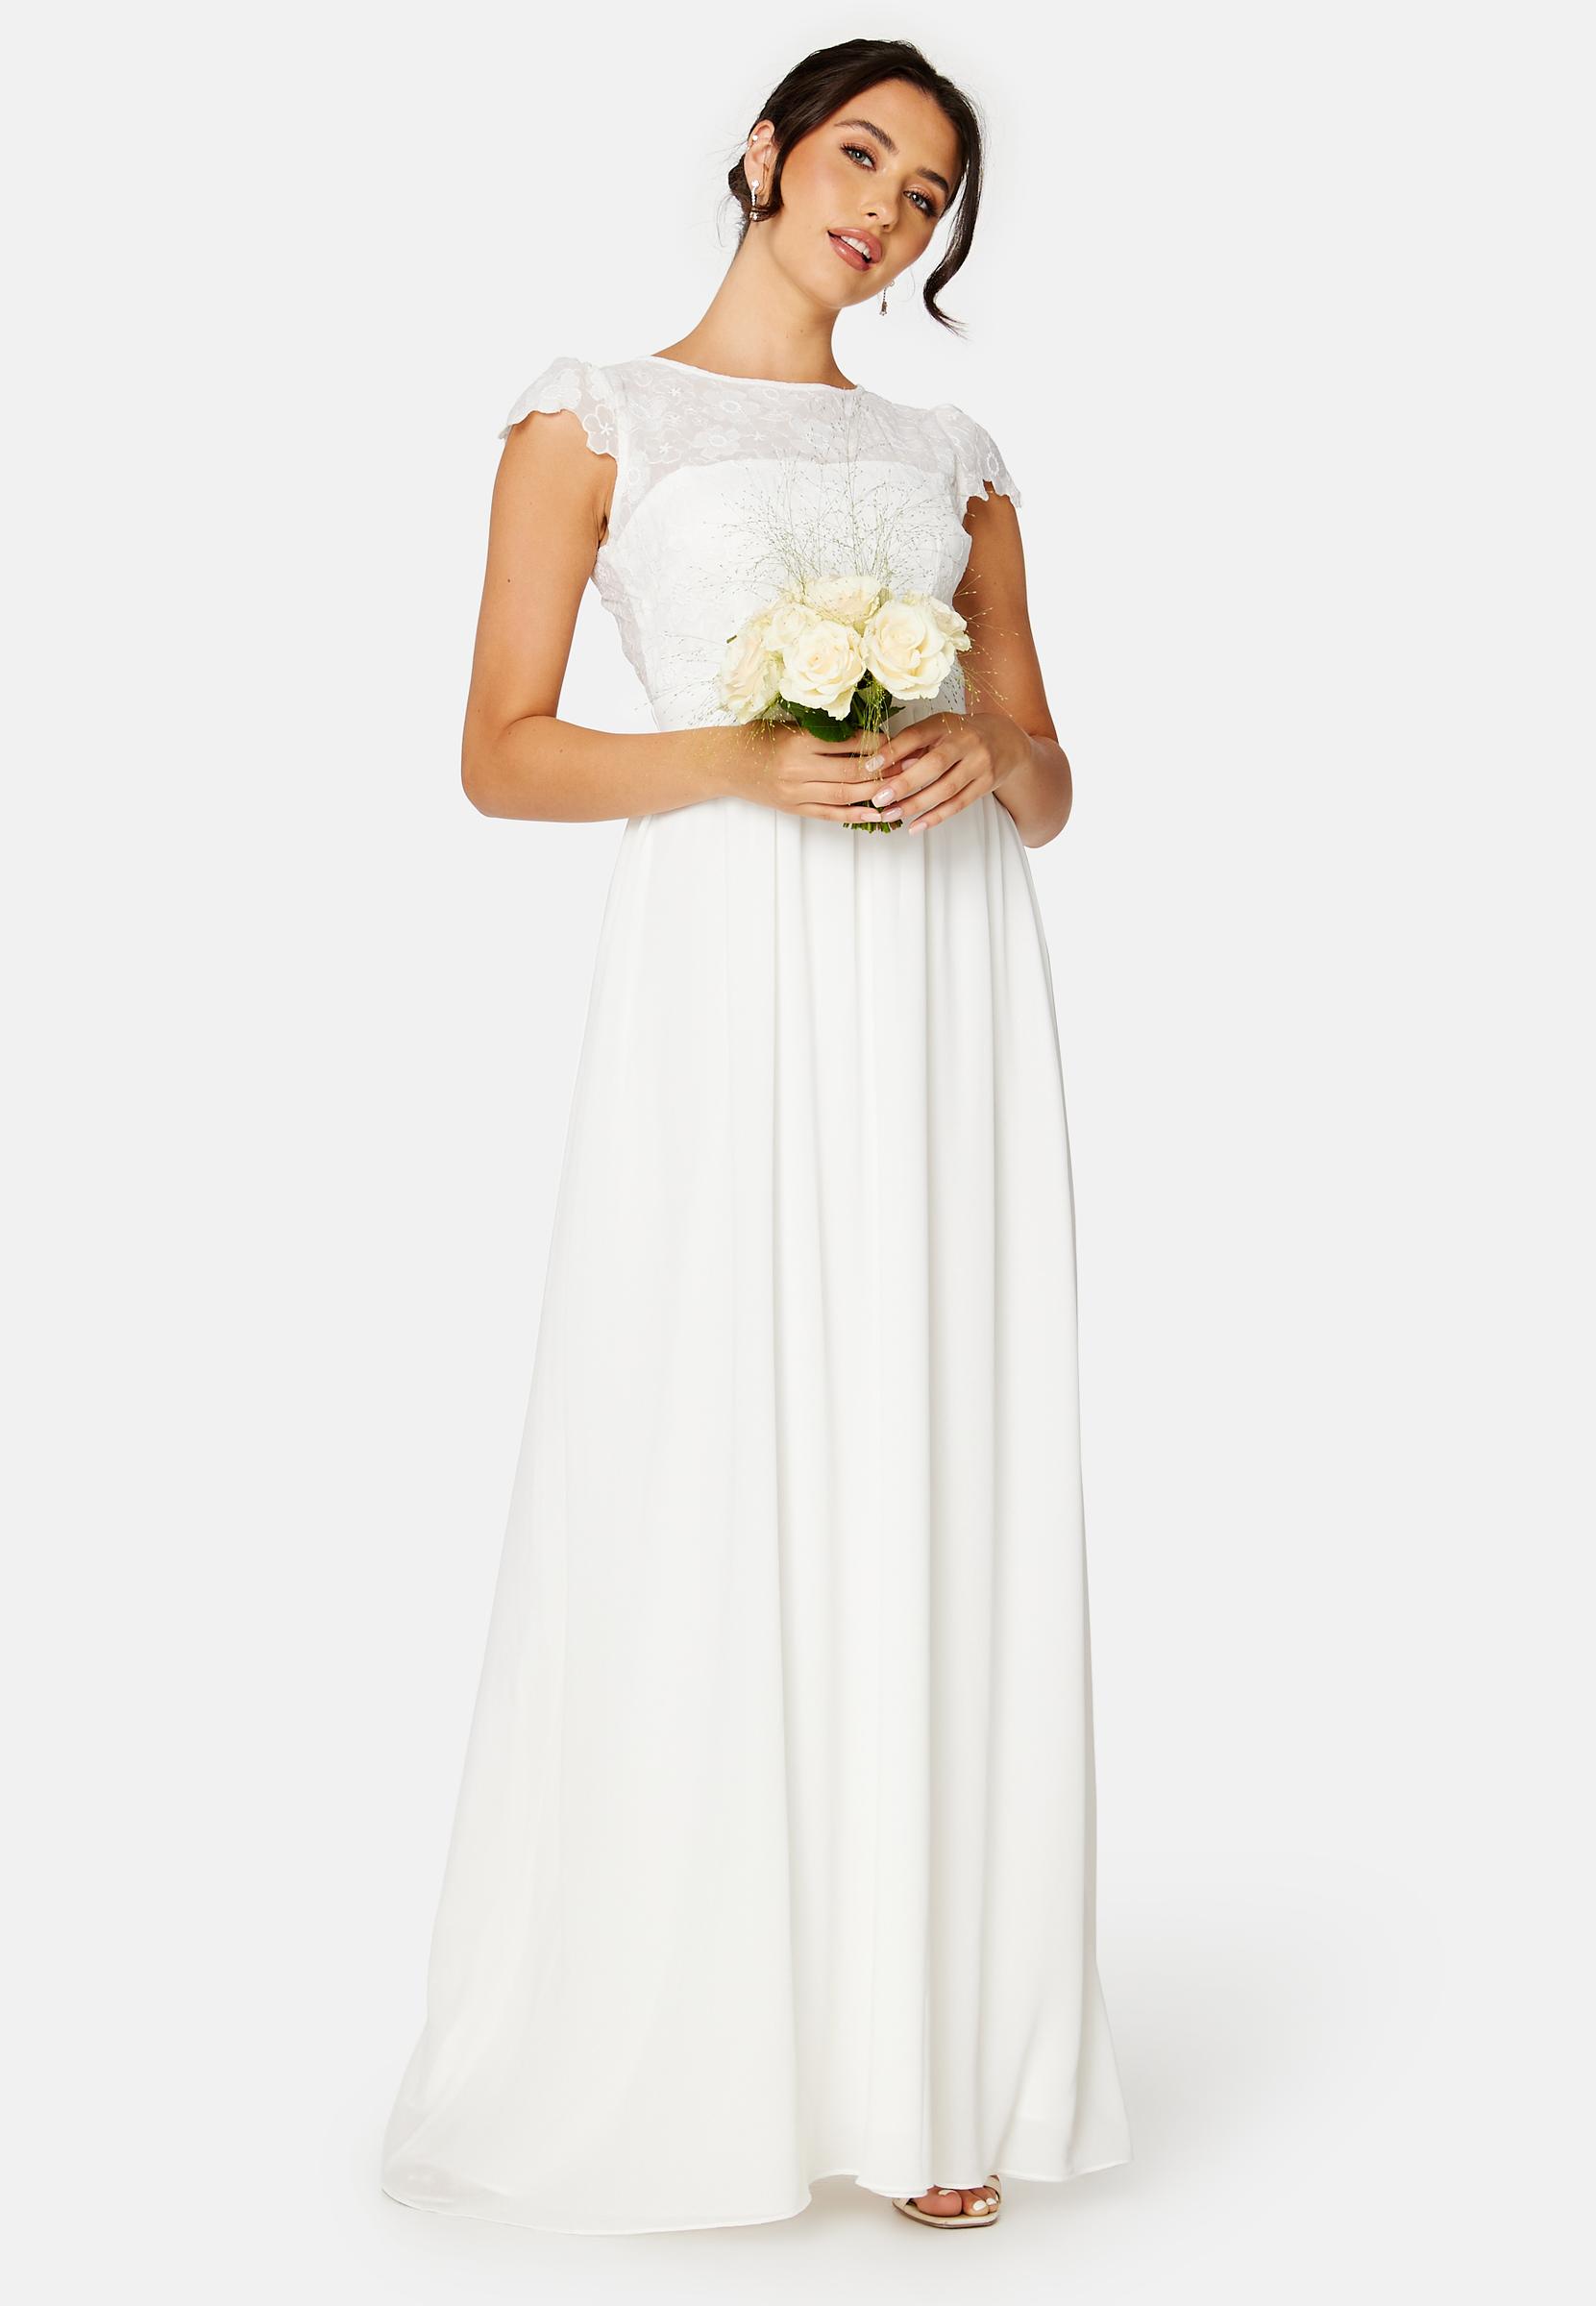 biała suknia ślubna nikolette koronka kwiaty